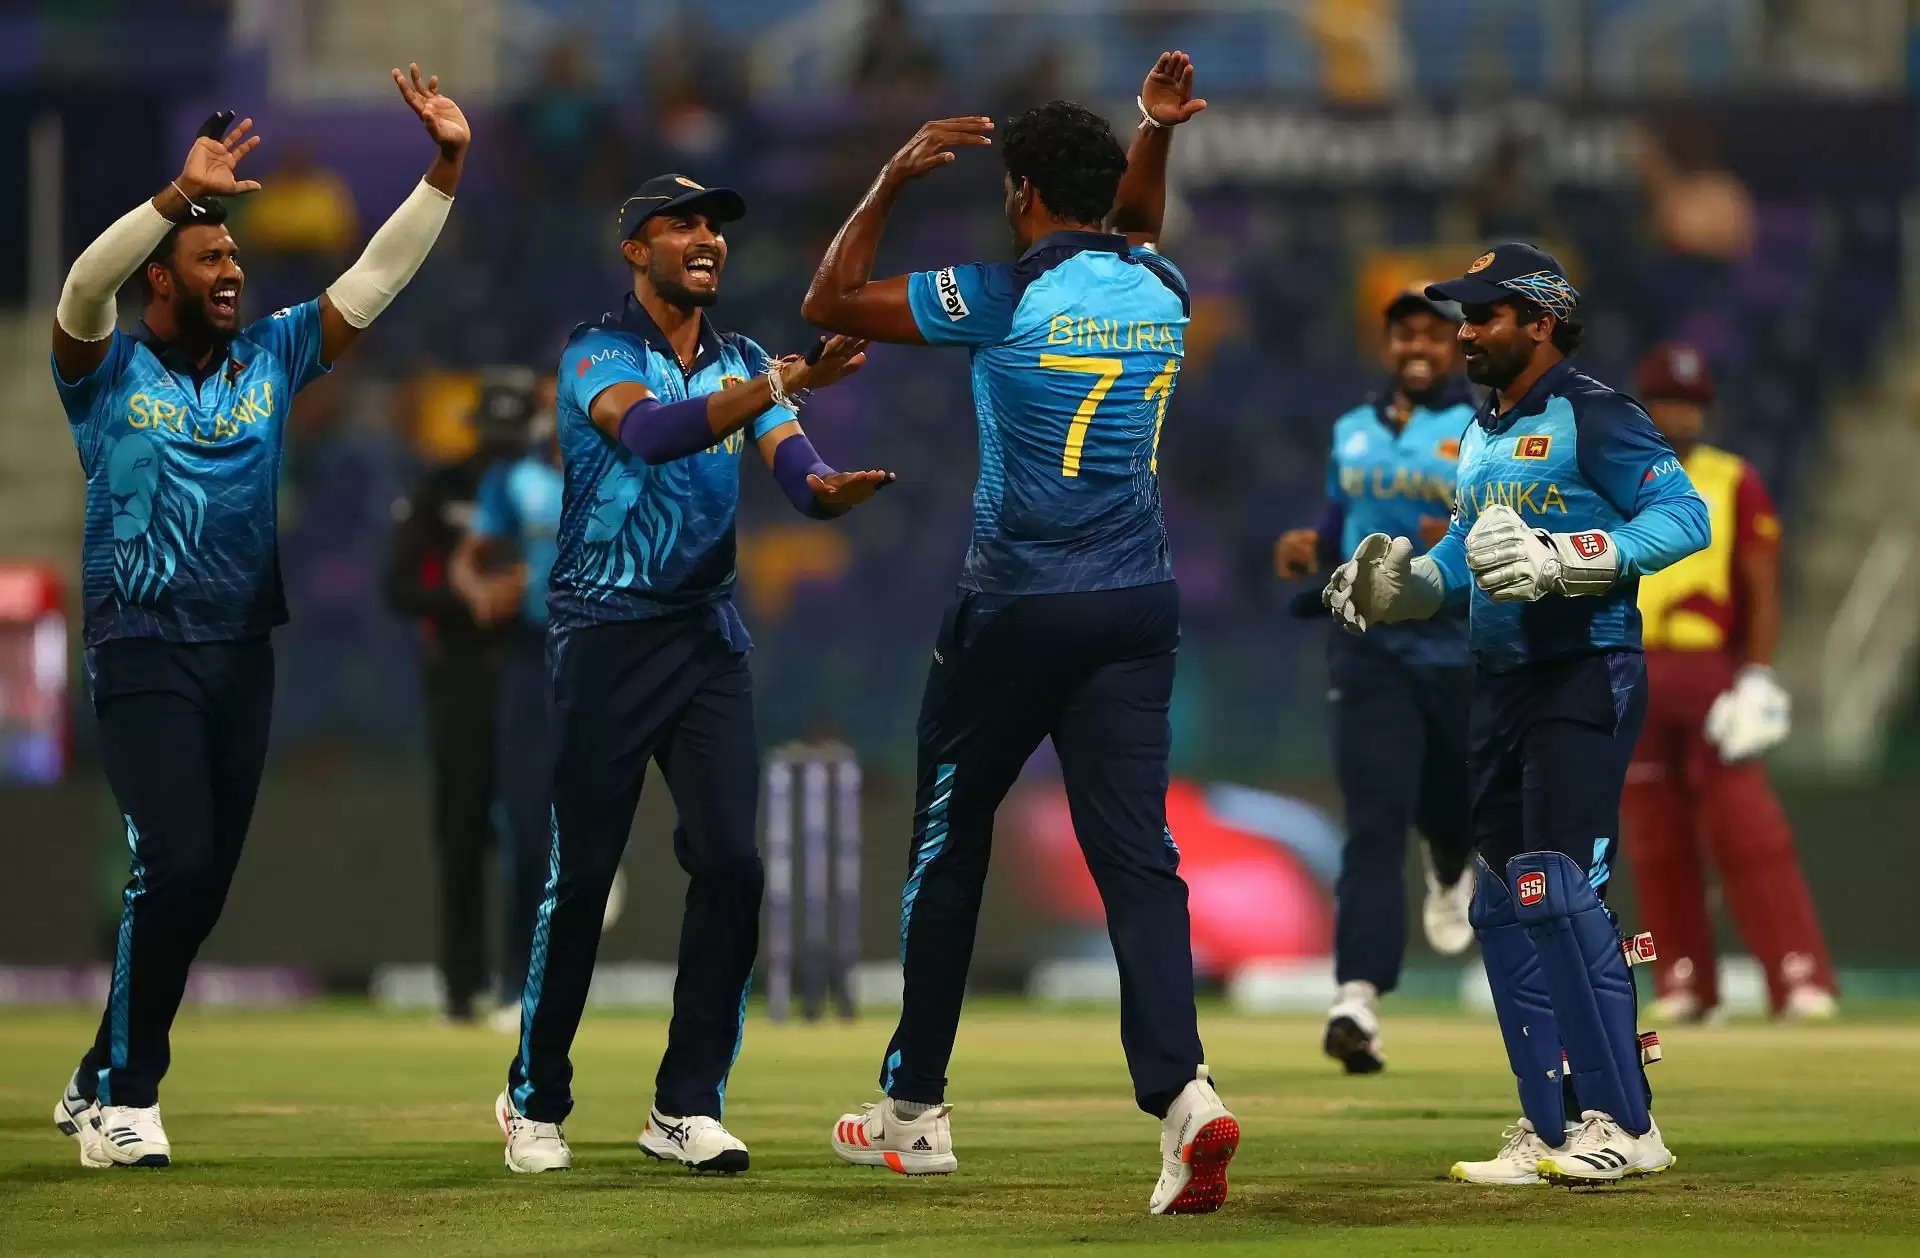 जिम्‍बाब्‍वे के खिलाफ वनडे सीरीज के लिए श्रीलंका स्‍क्‍वाड में तीन अनकैप्‍ड तेज गेंदबाज शामिल